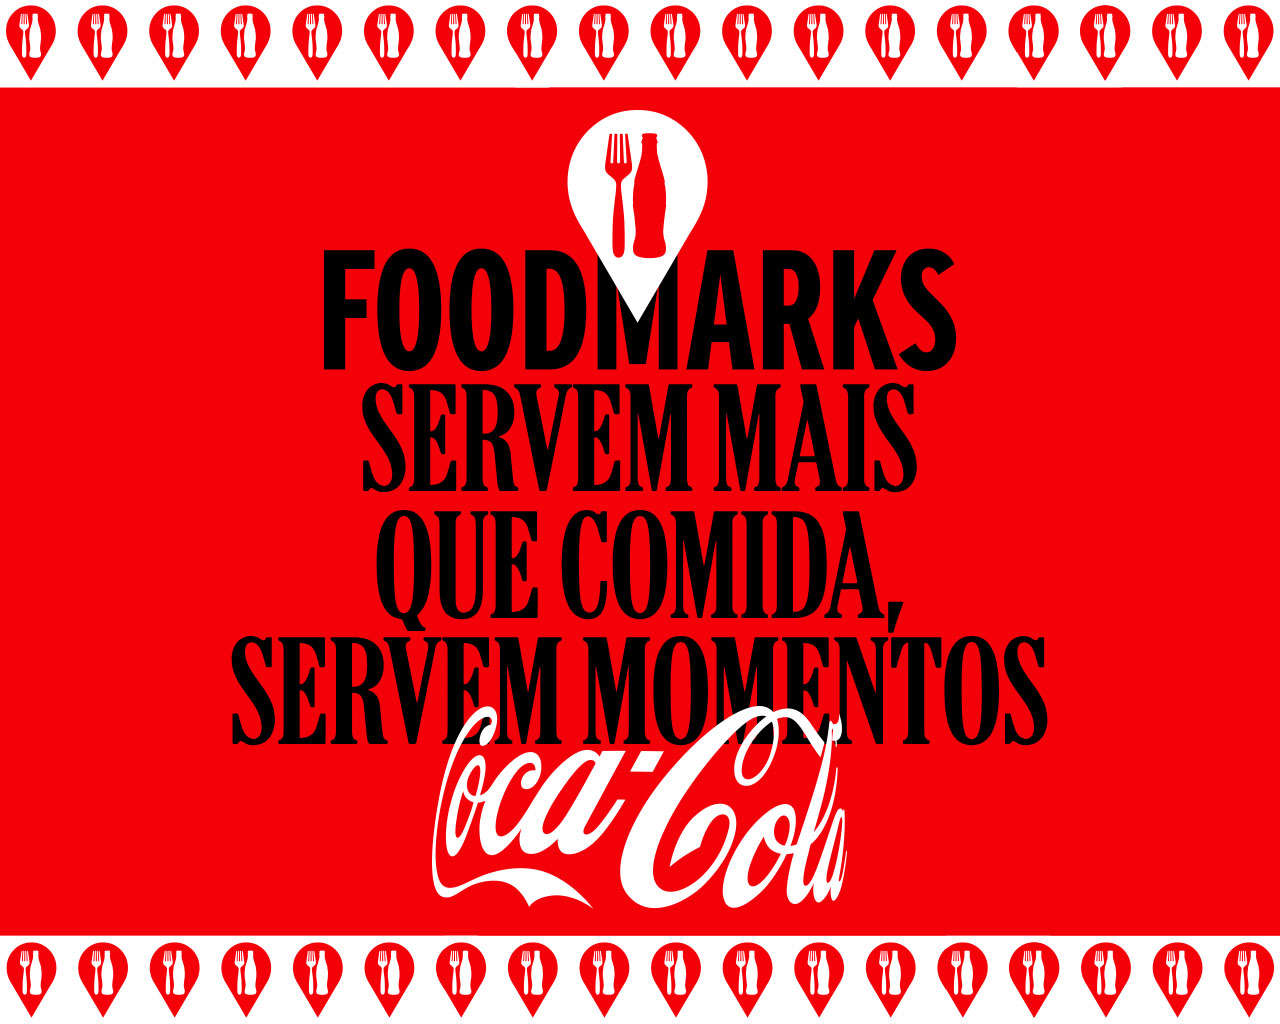 Coca-Cola Foodmarks servem mais que comida, servem momentos